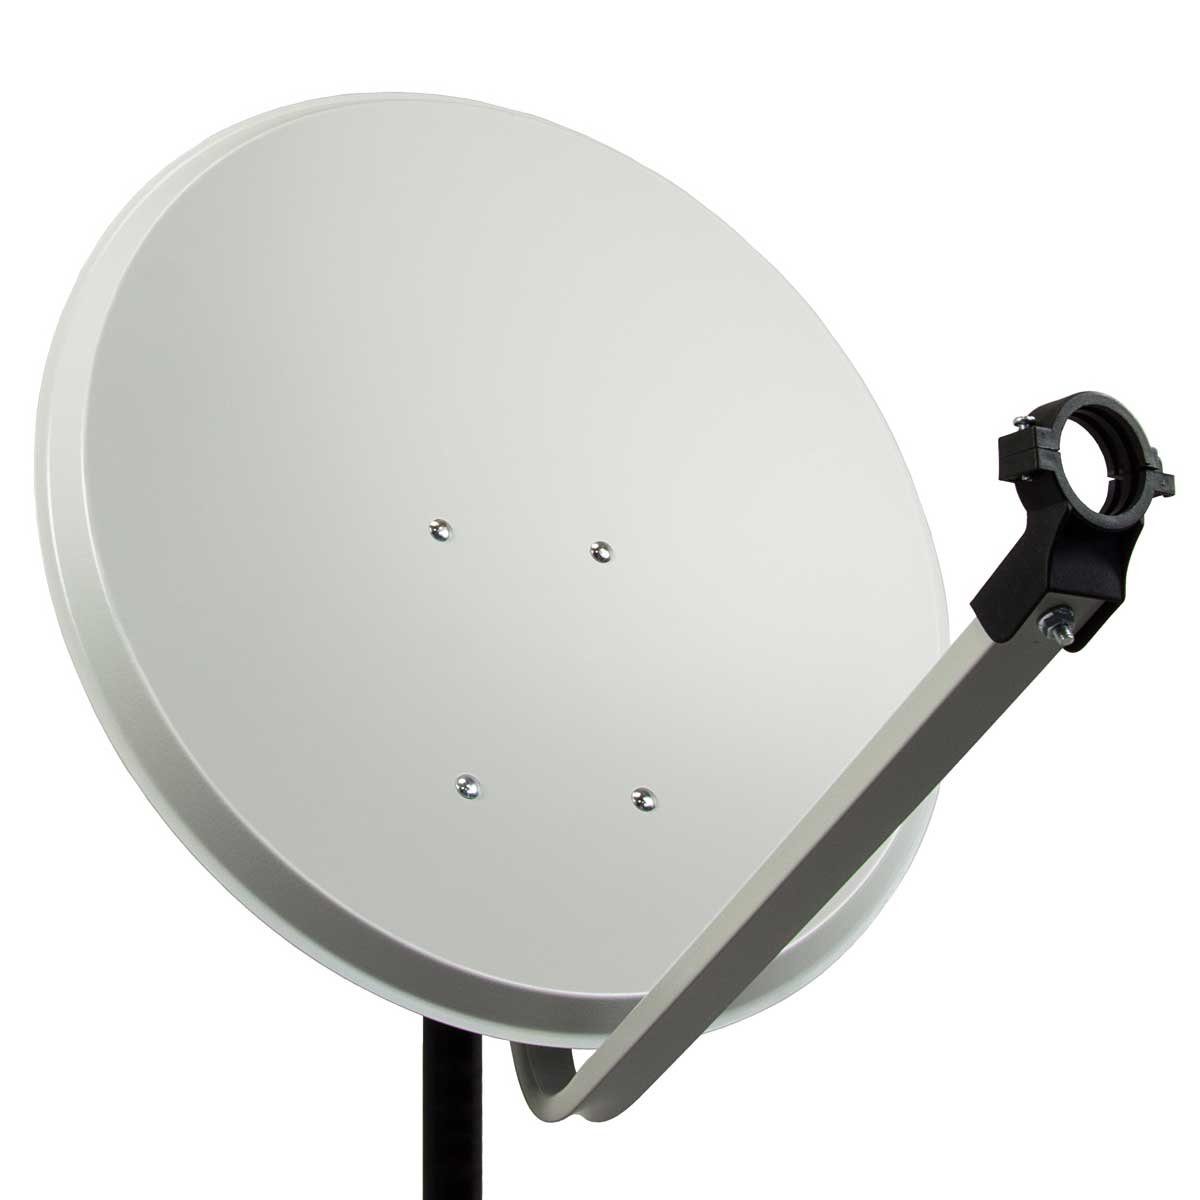 PremiumX »PXA80 Satellitenschüssel 80cm Aluminium Hellgrau  Satellitenantenne Offset Spiegel« SAT-Antenne online kaufen | OTTO